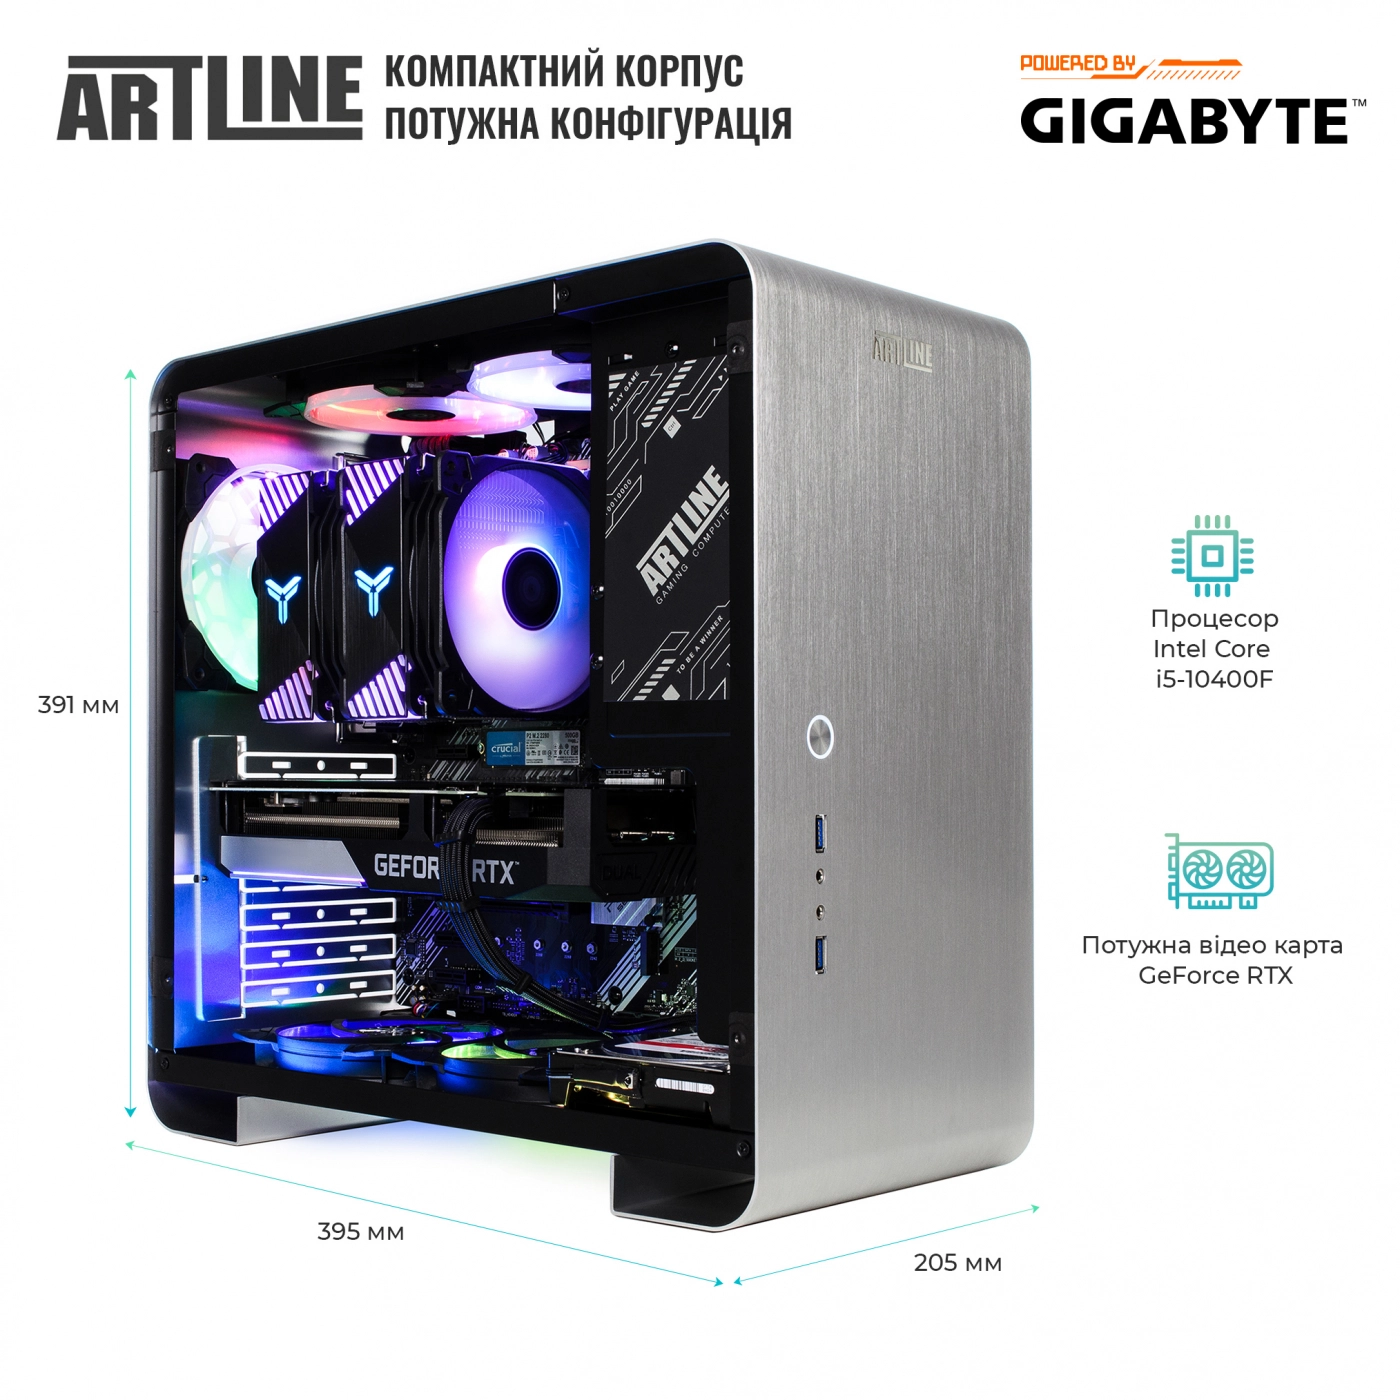 Купить Компьютер ARTLINE Gaming X55v36 - фото 6